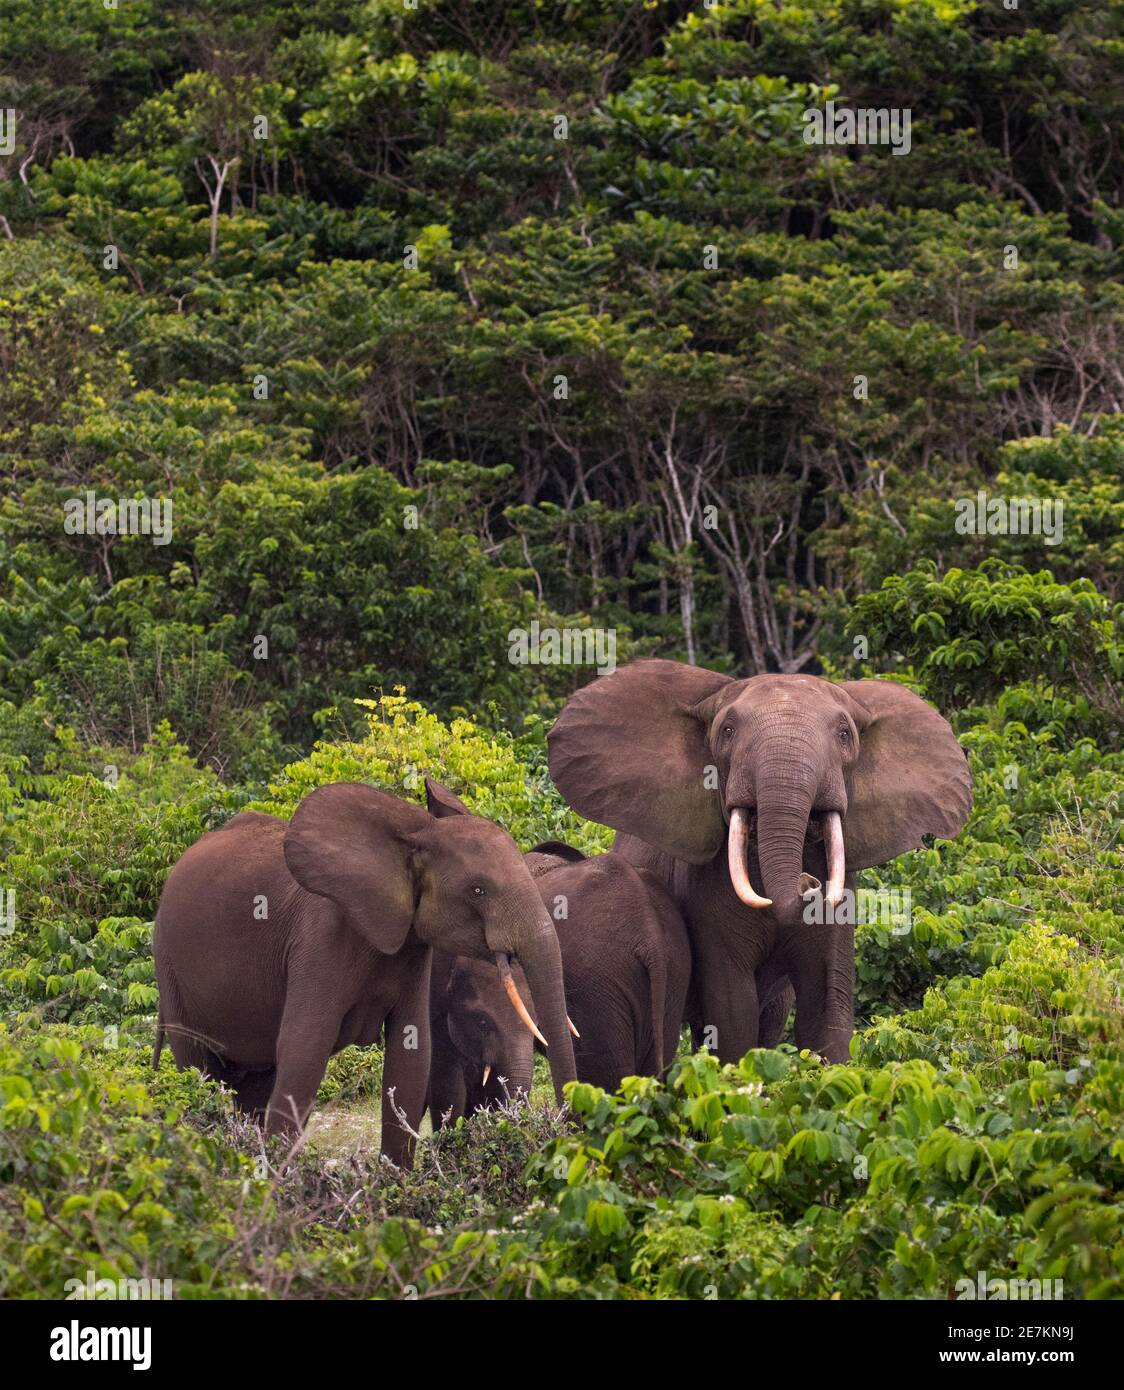 Éléphant forestier africain (Loxodonta cyclotis), famille en formation protectrice étroite avec jeunes au centre, Parc national de Loango, Gabon. Banque D'Images